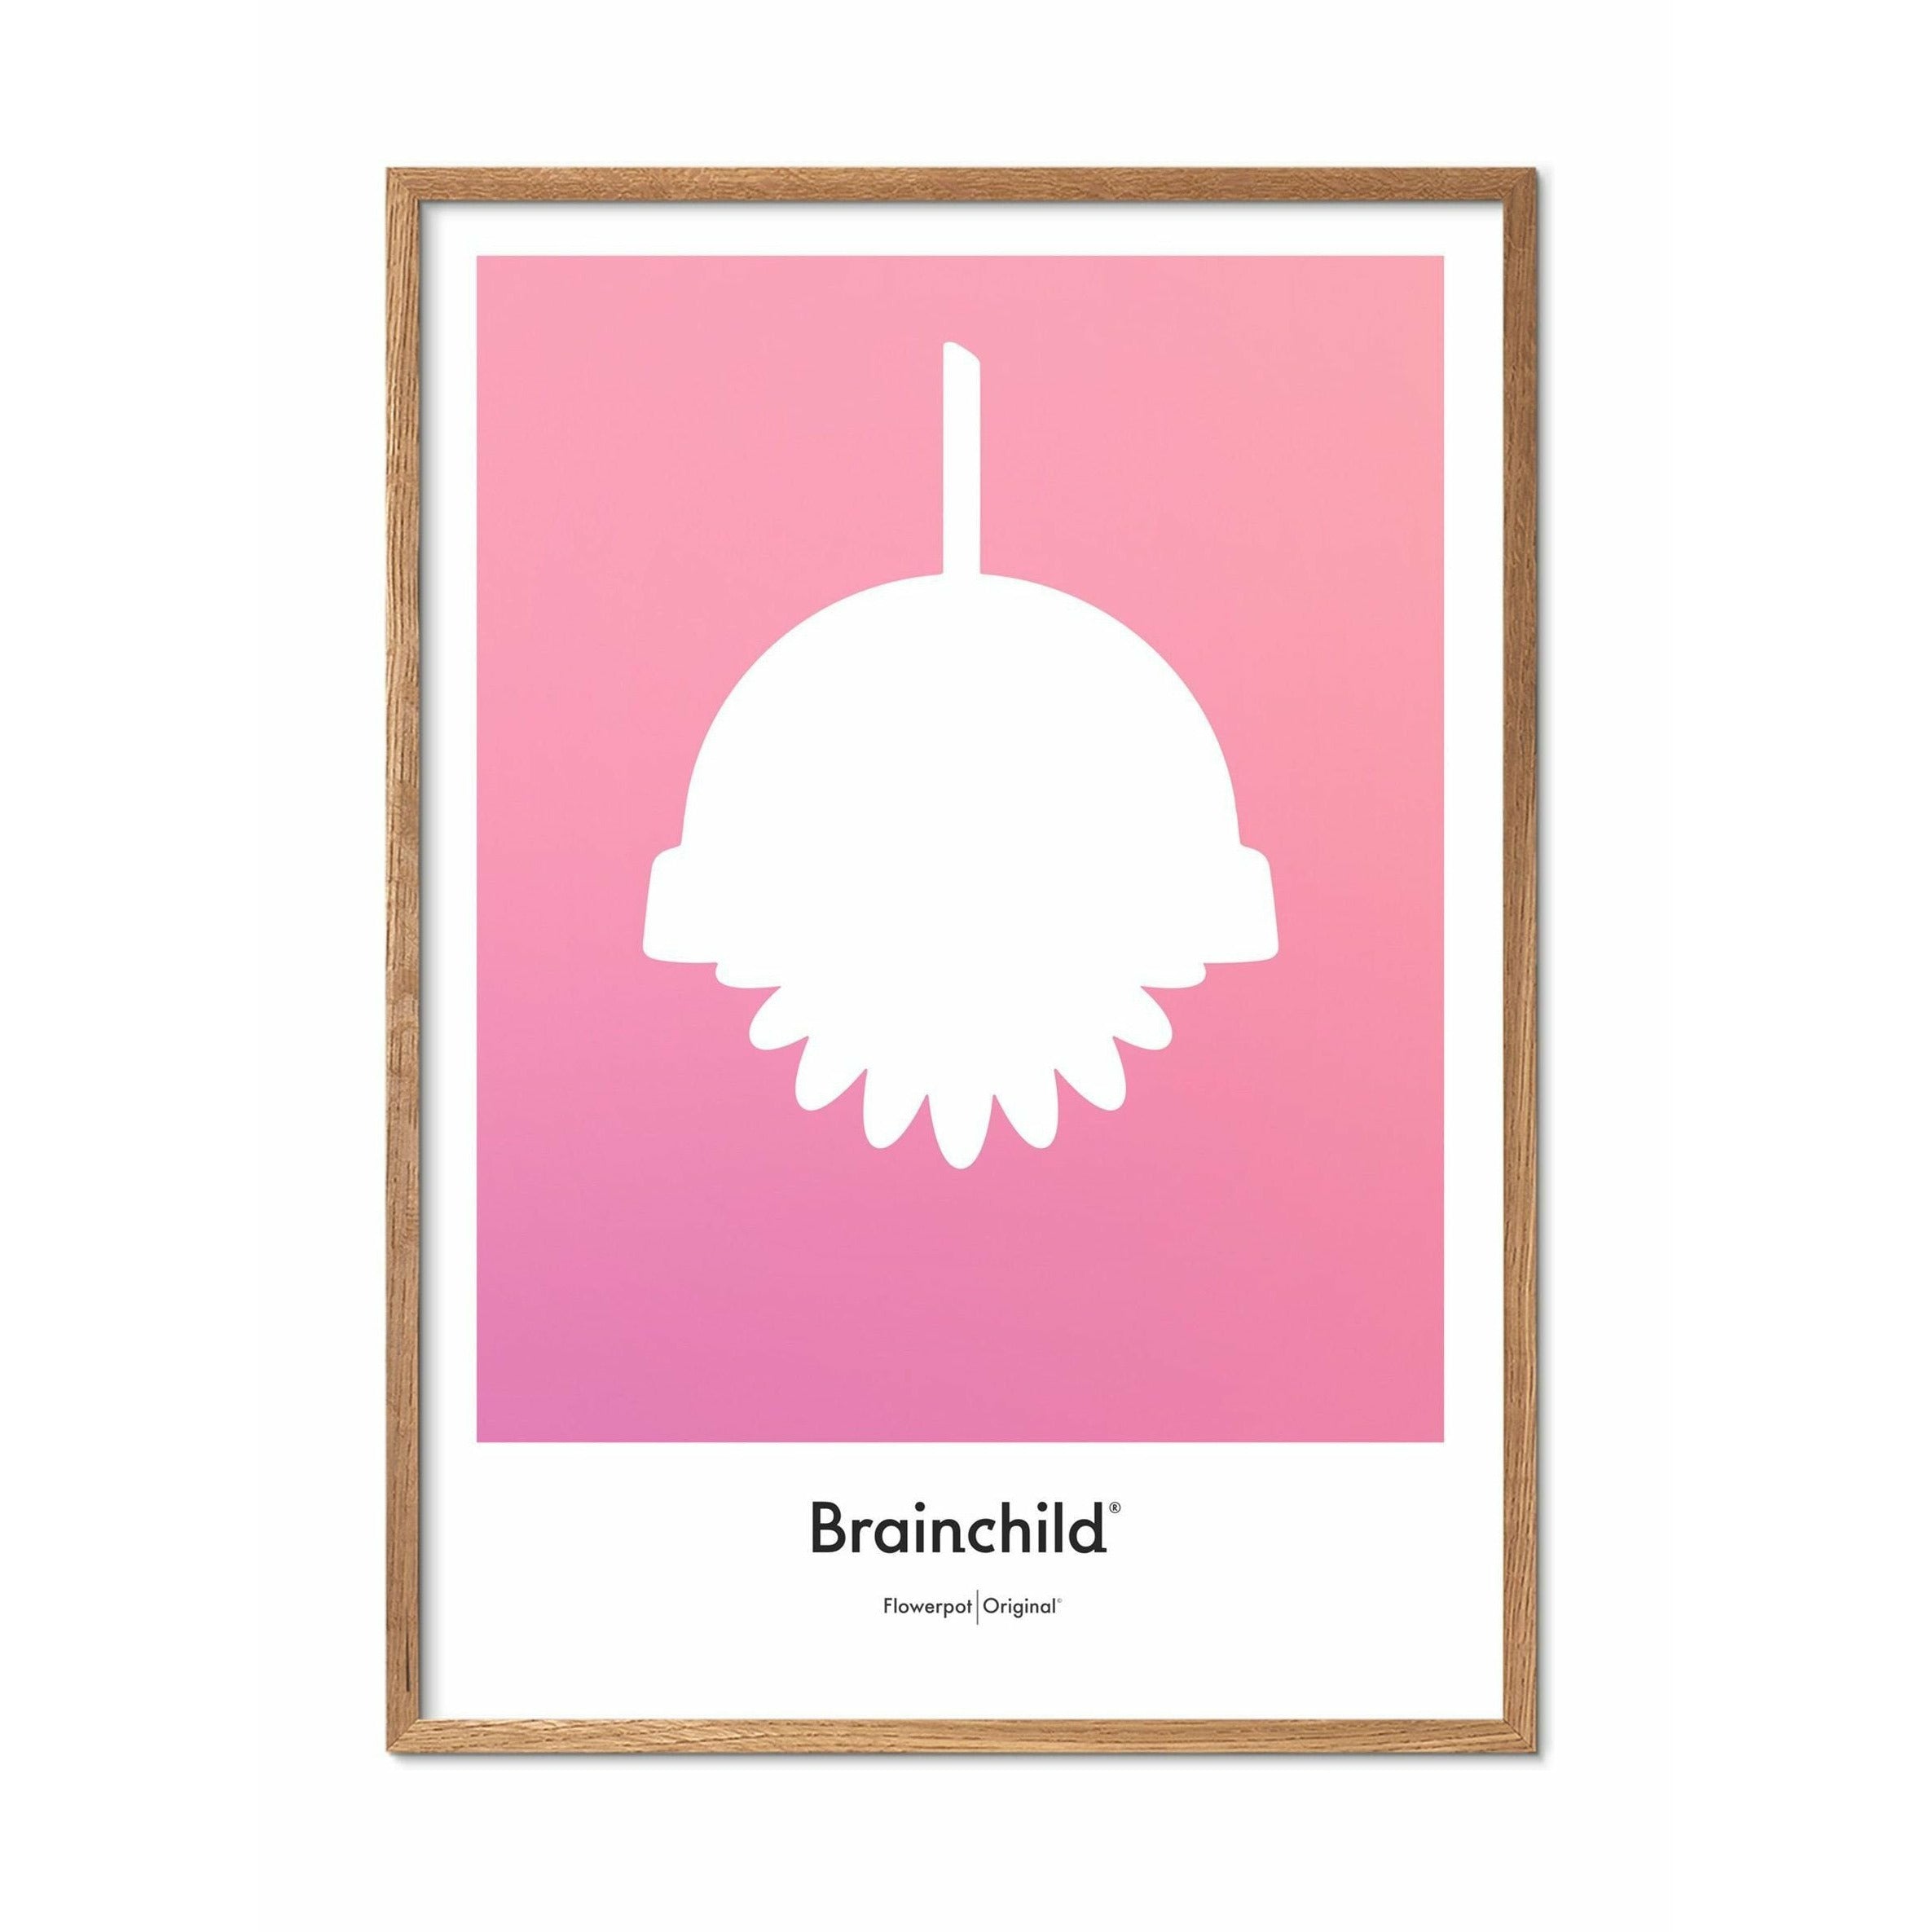 Plakát pro design Brainchild Flowerpot Plakát, rám vyrobený z lehkého dřeva 50x70 cm, růžový